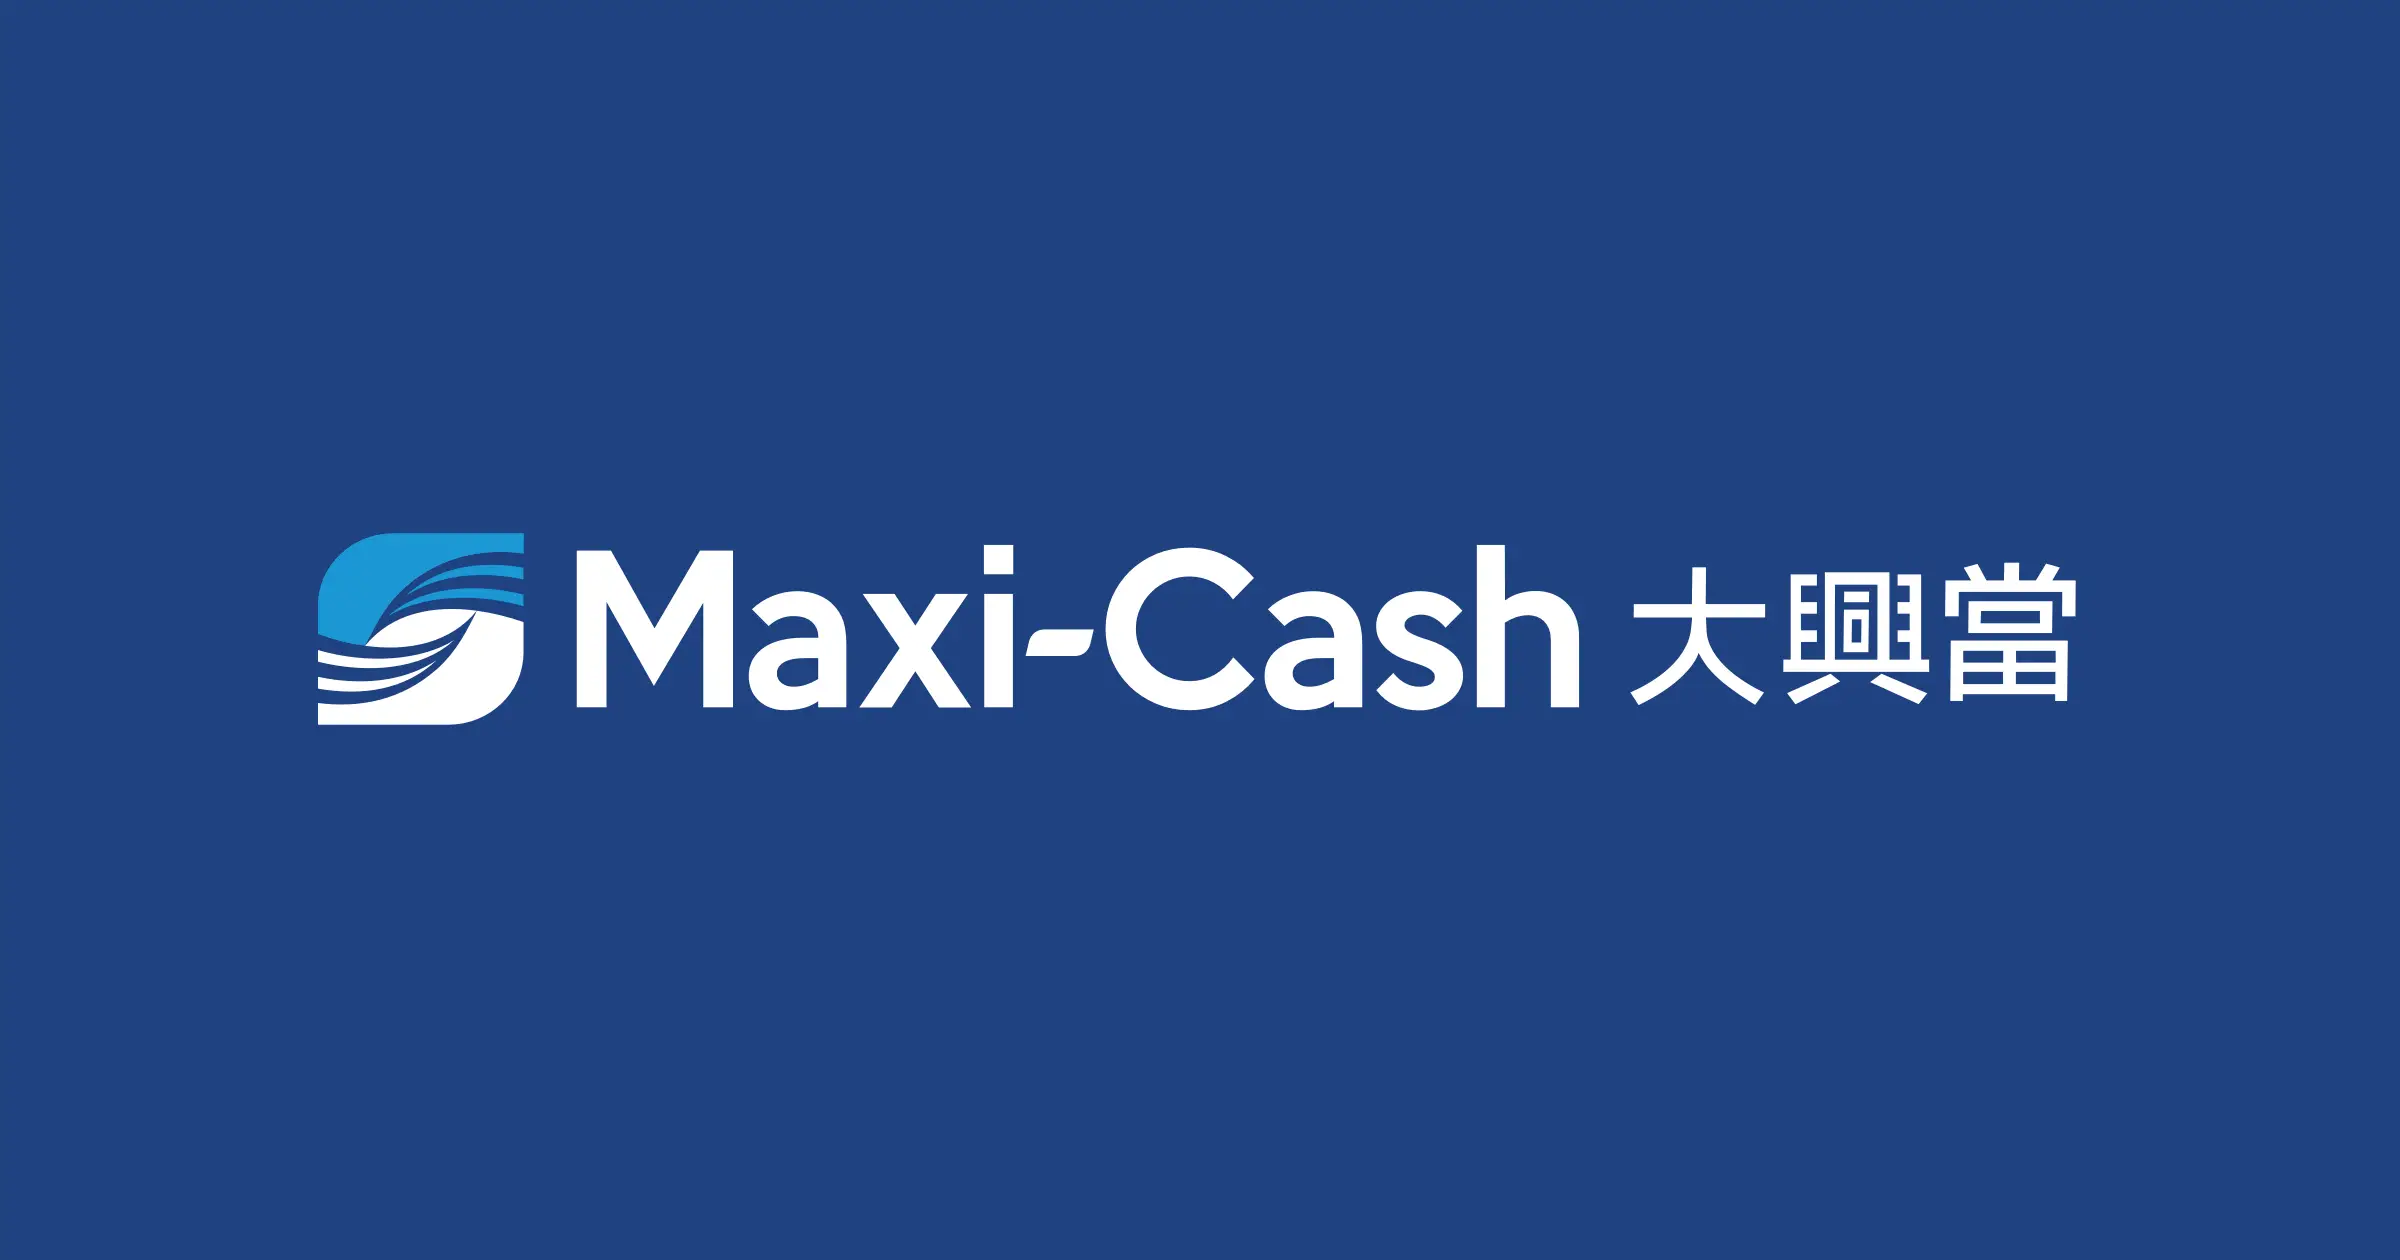 Maxi Cash 916 Gold